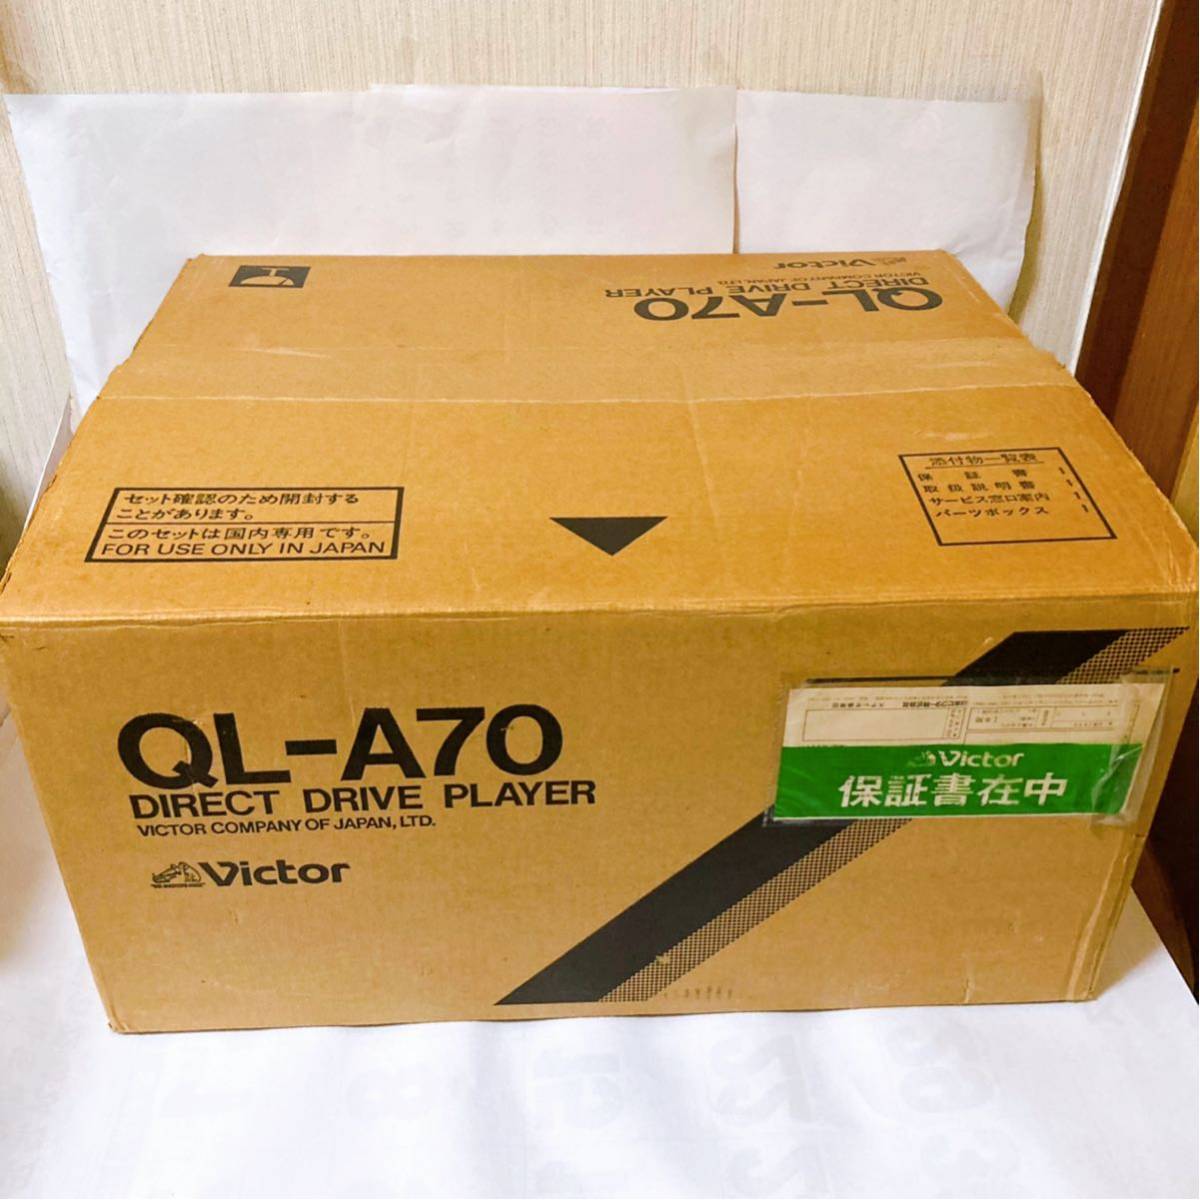 Victor ビクター QL-A70 レコードプレーヤー ターンテーブル